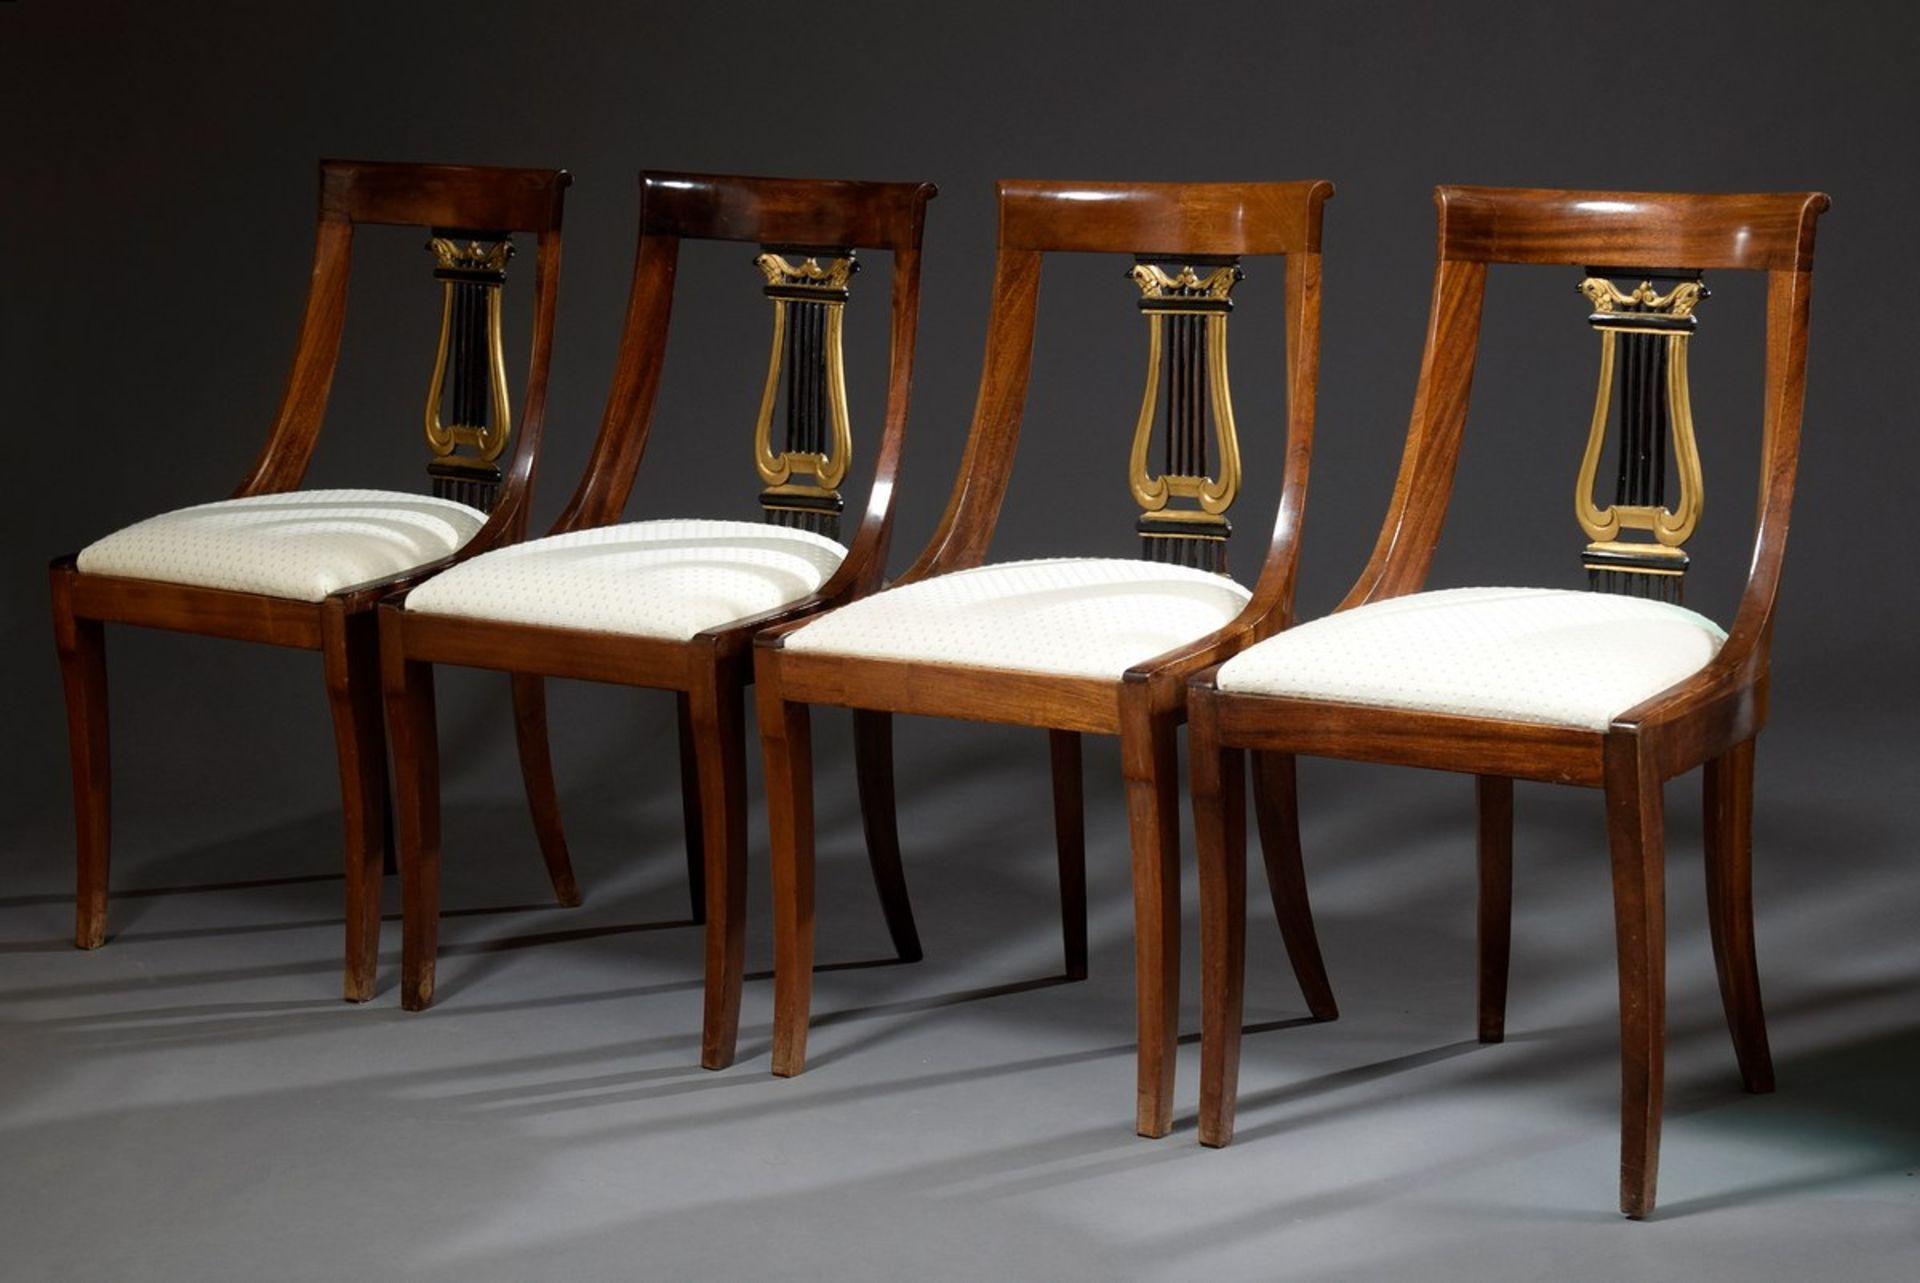 4 Stühle im Empire Stil mit geschnitztem Lyramotiv in der Lehne und hellen Sitzpolstern, Nussbaum, - Image 3 of 8